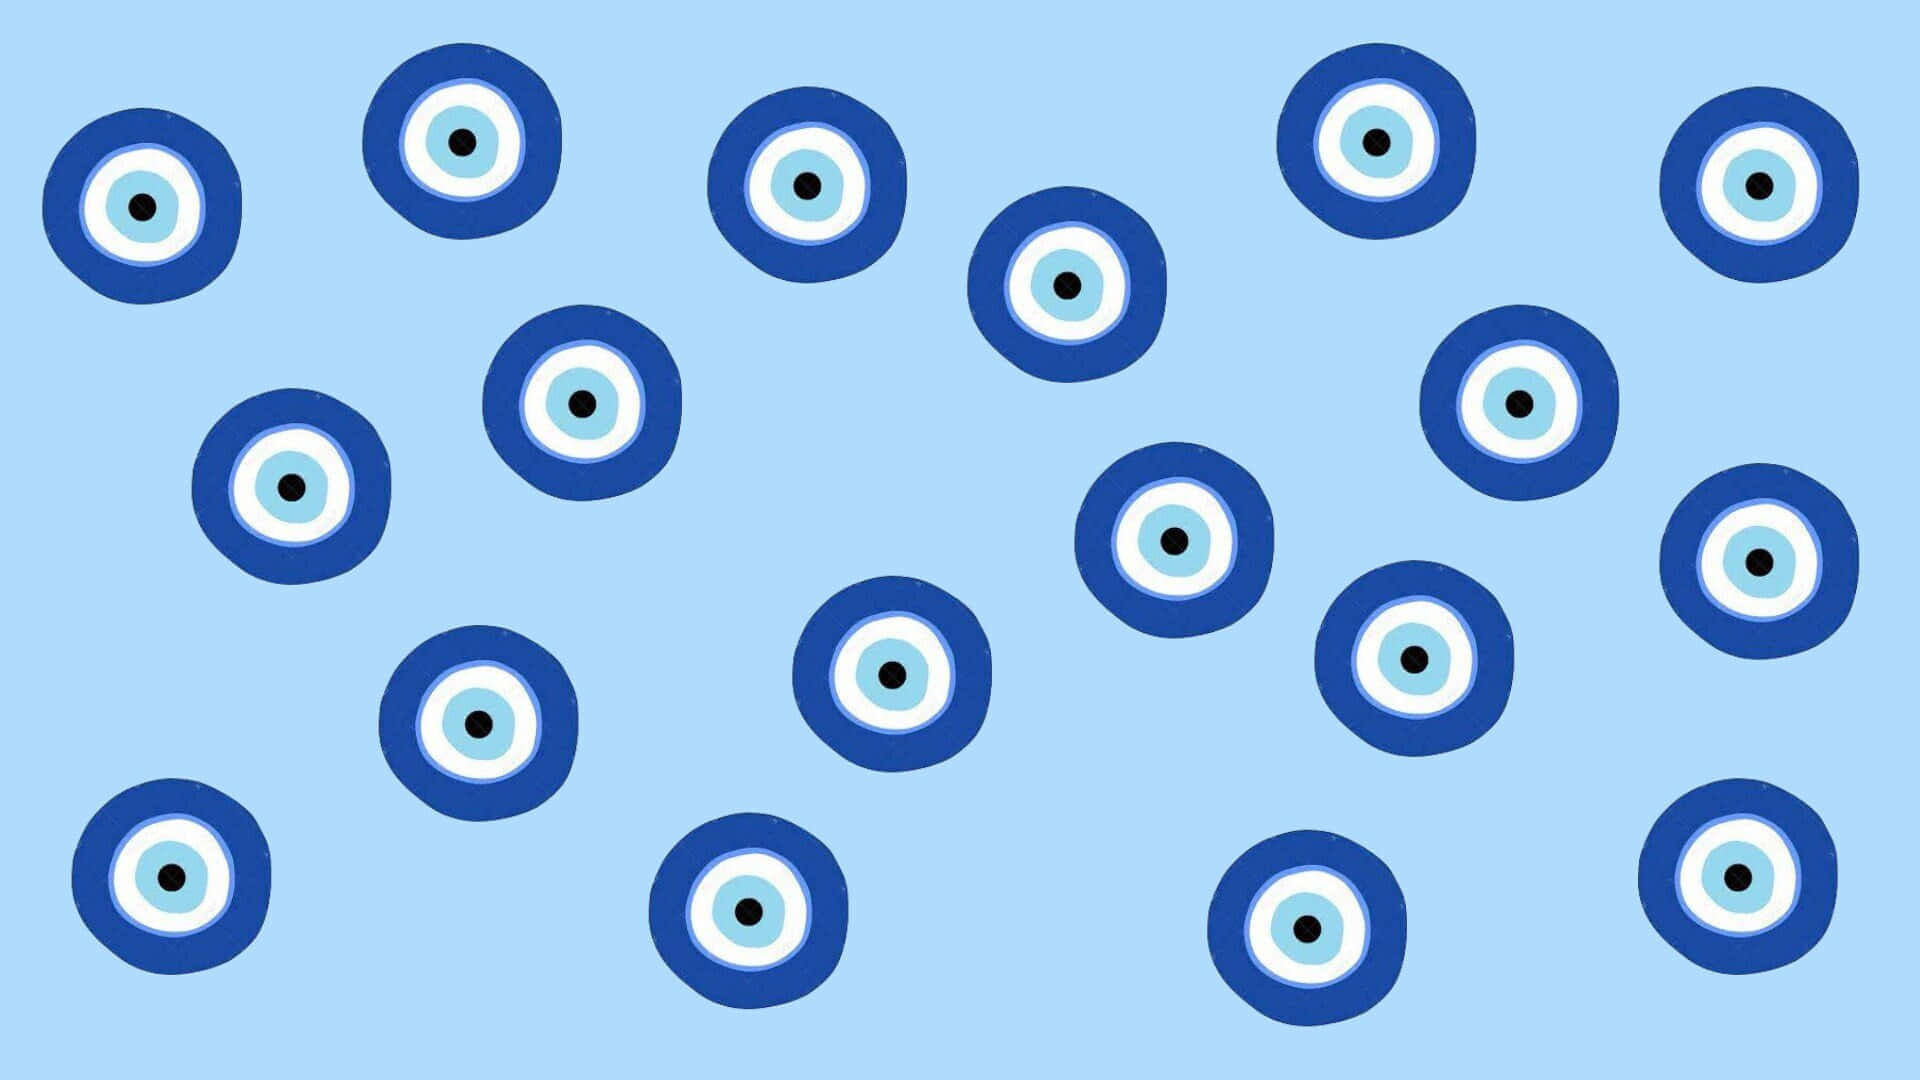 Evil Eye Pattern Aesthetic.jpg Wallpaper